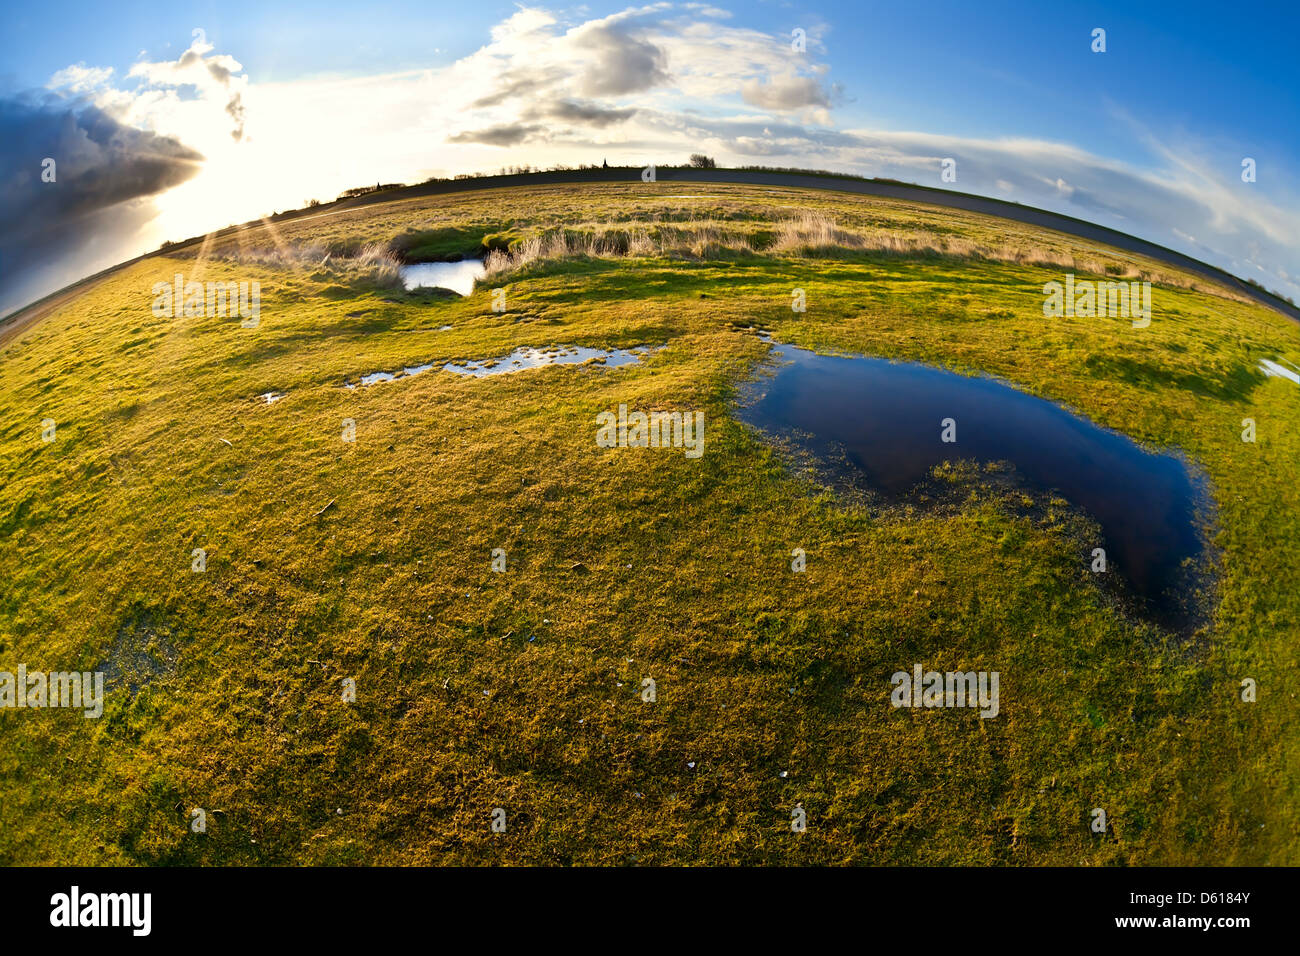 Teich, Weide und Sonne über fisheye view Stockfoto